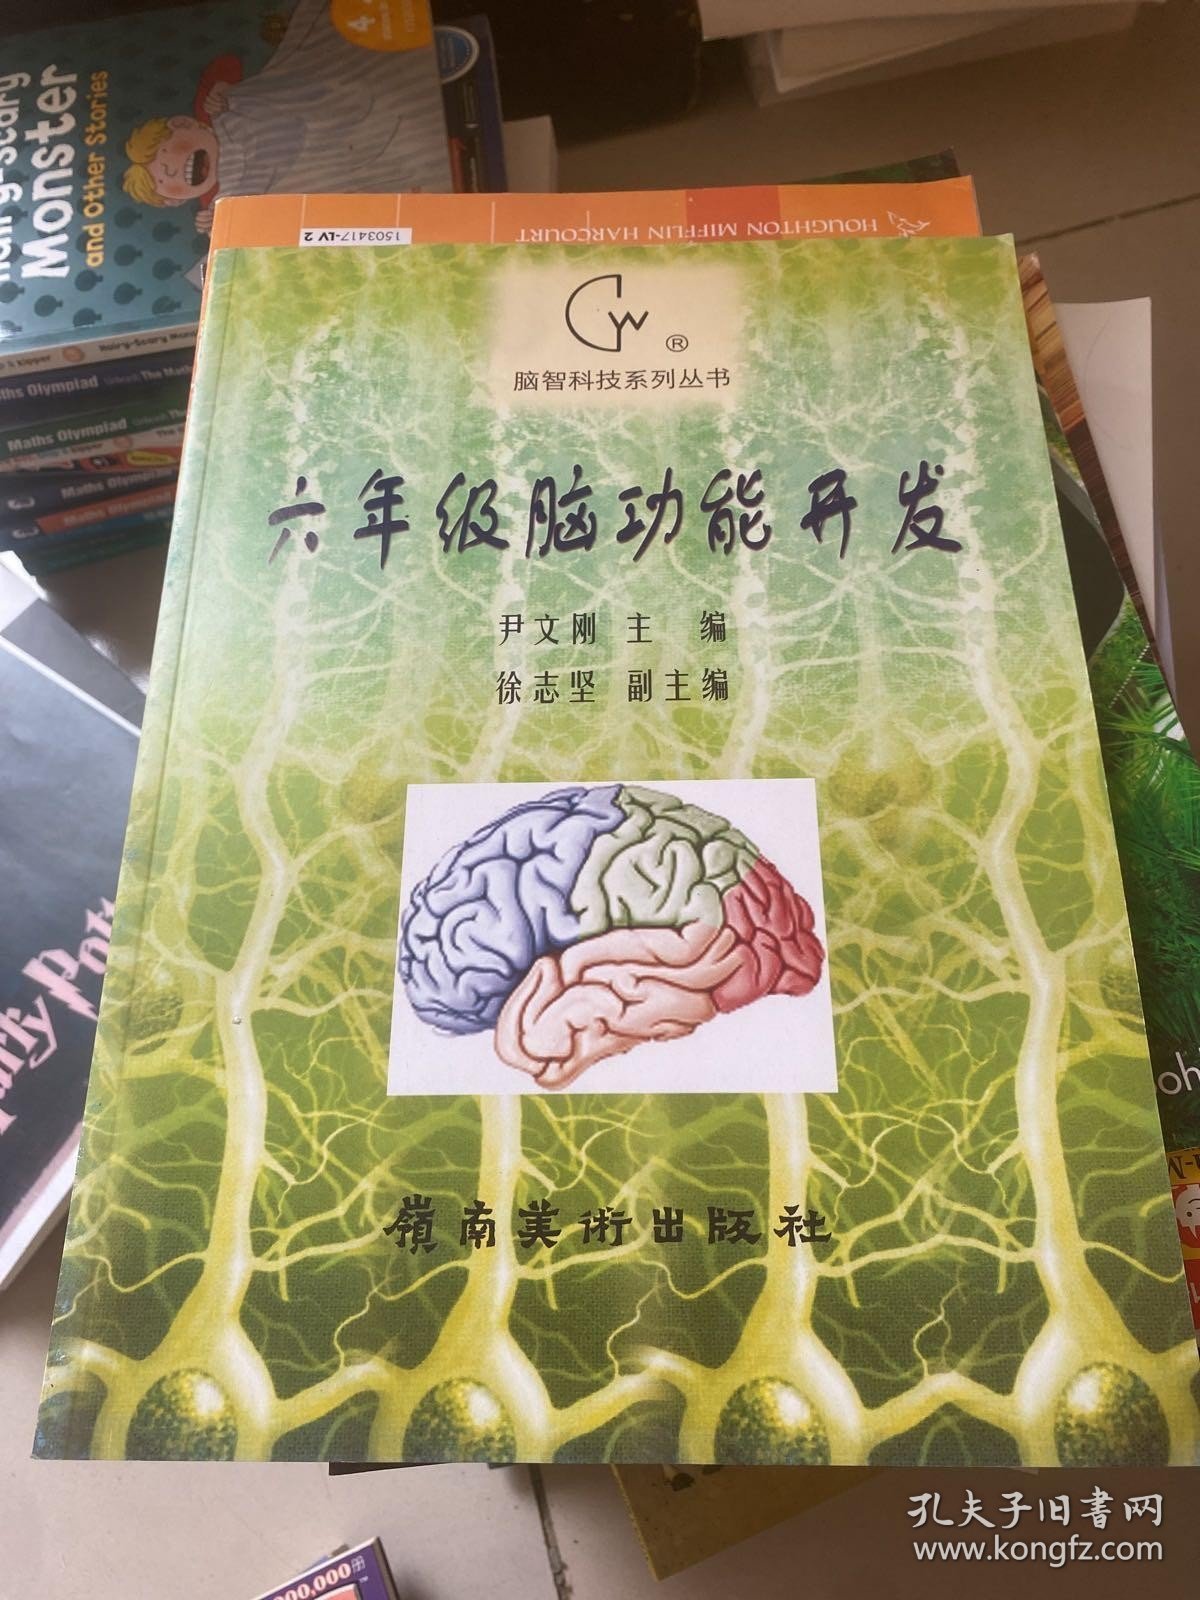 脑智科技系列丛书。六年级脑功能开发